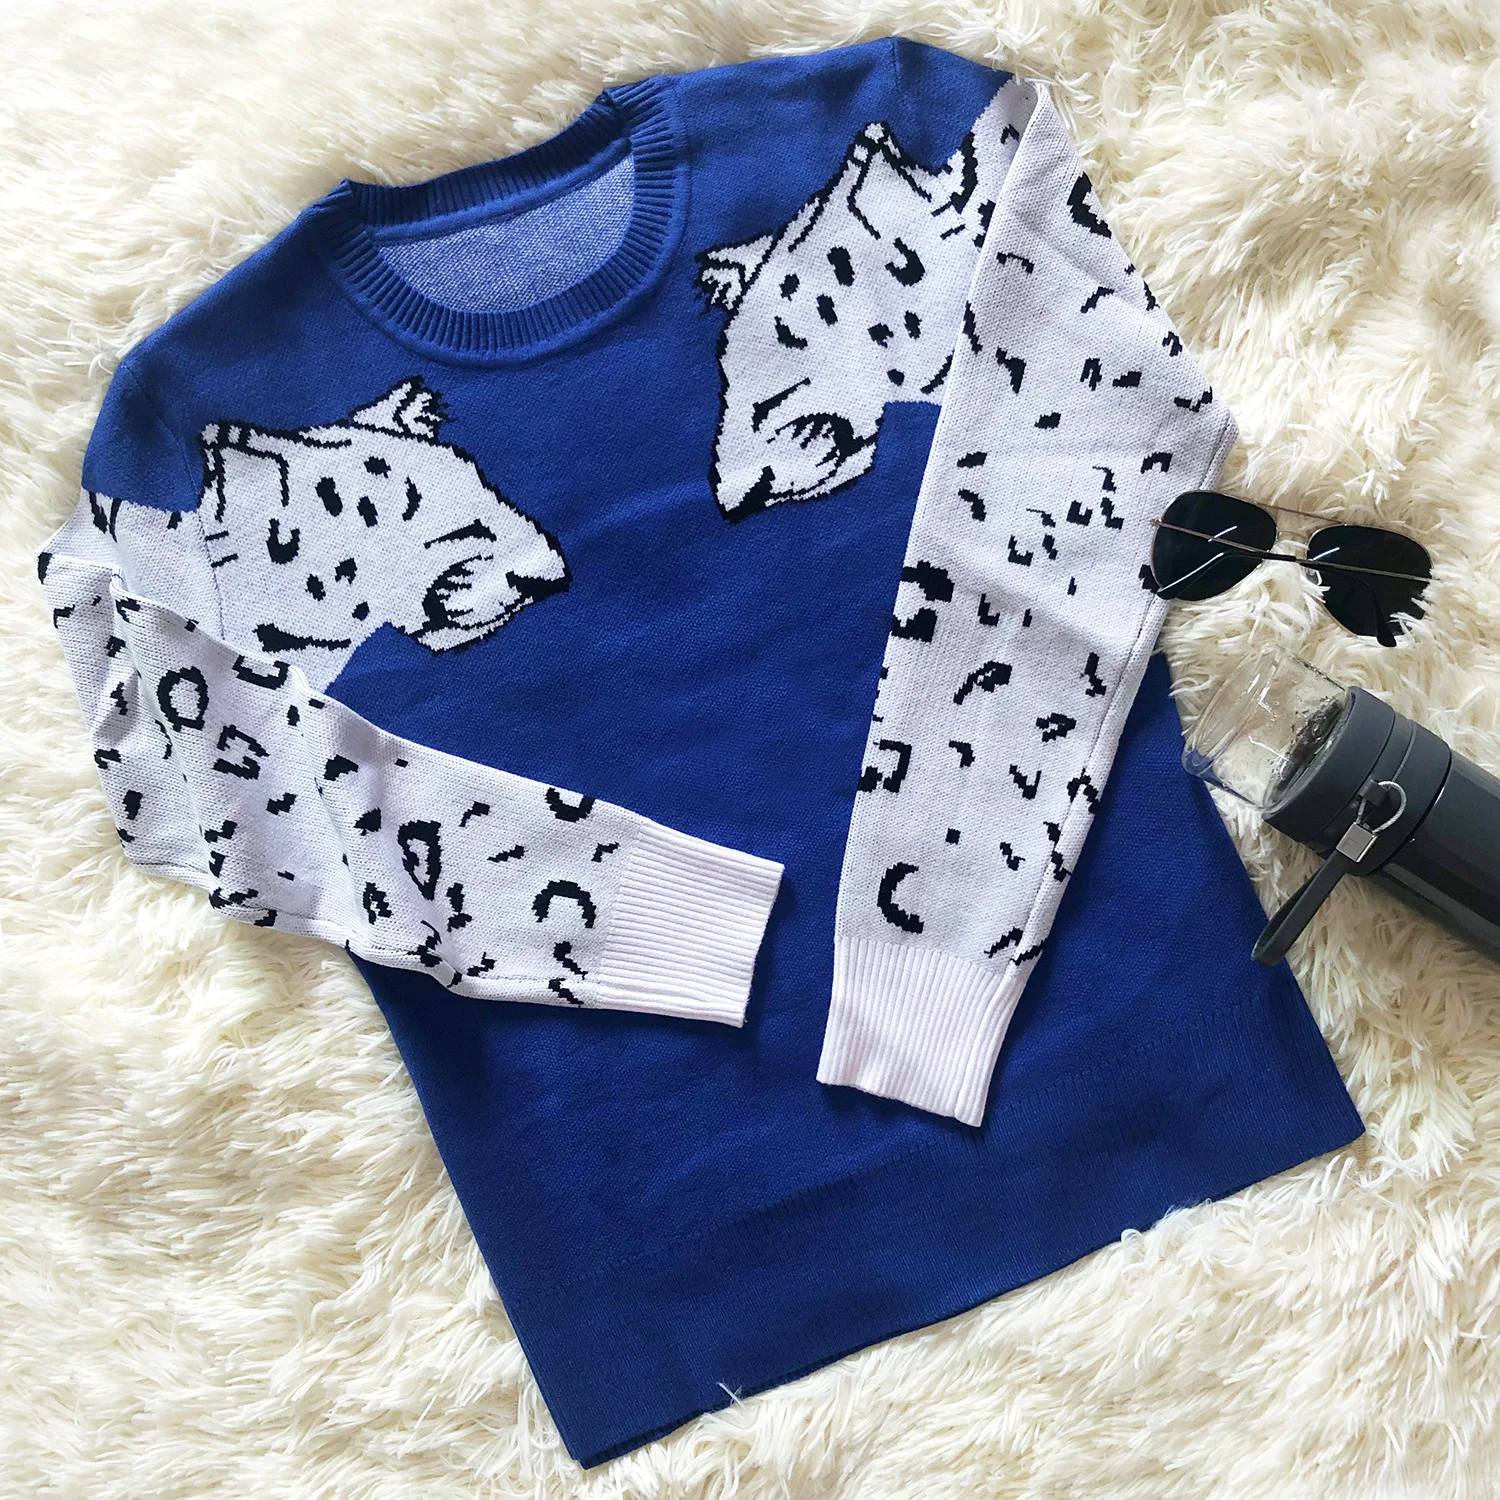 Hirigin сексуальный свитер с леопардовым принтом для женщин, весна, новые модные джемперы с длинным рукавом, укороченный топ, вязаная уличная одежда для женщин - Цвет: E Blue